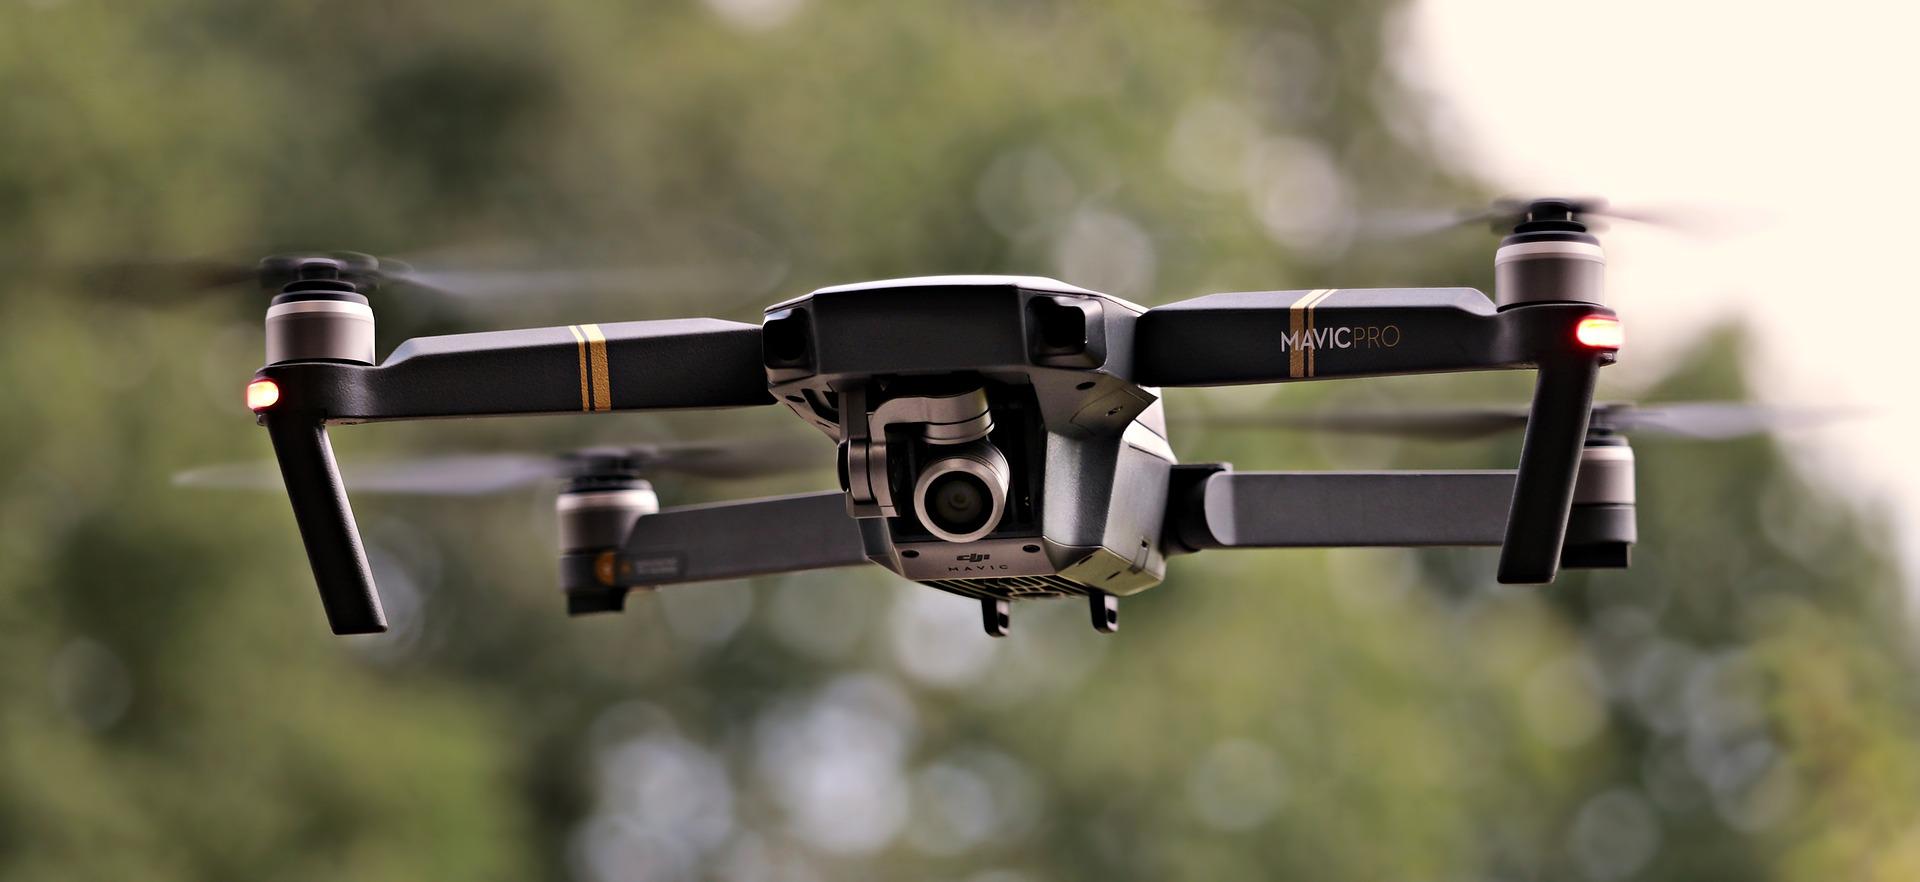 Les modèles Mavic Pro représentent les meilleurs choix de drone pour voyage